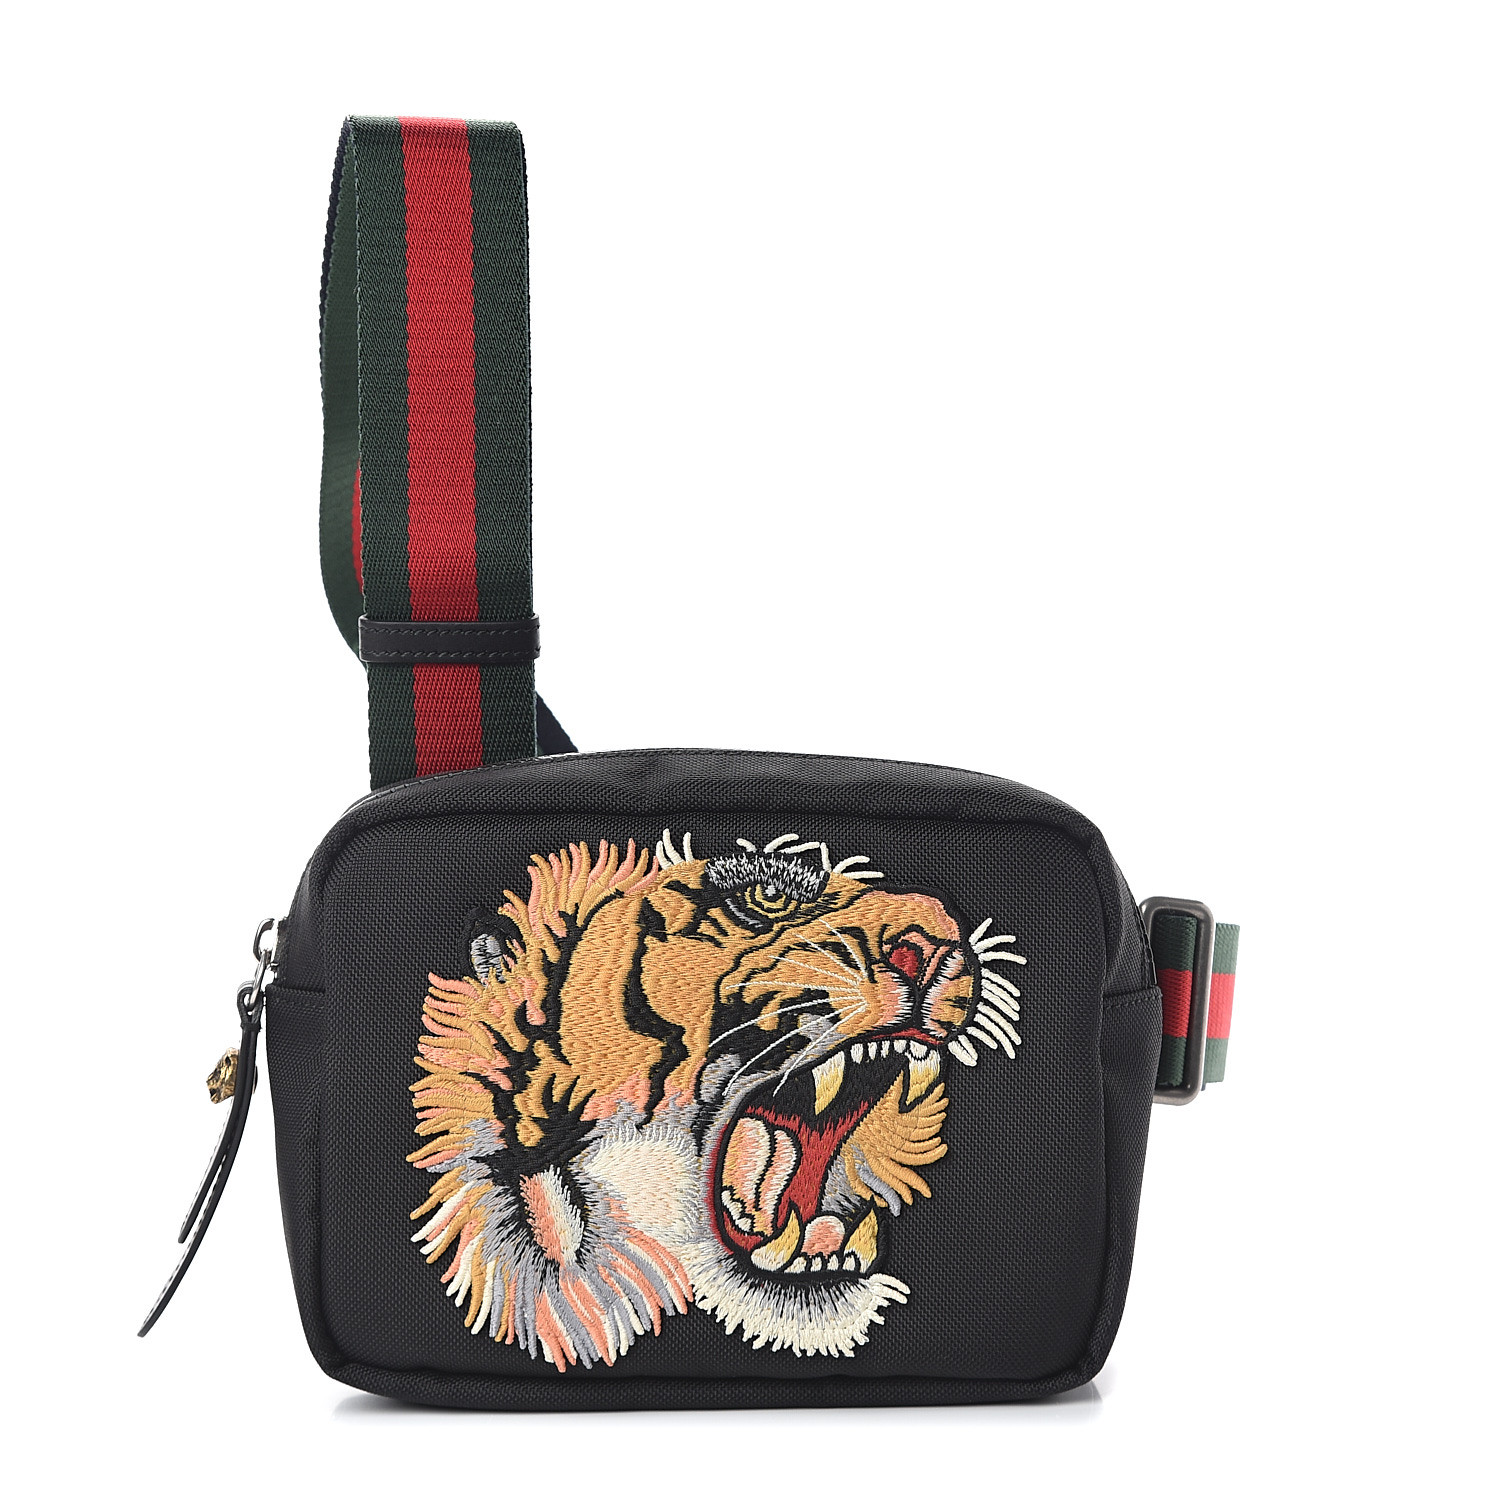 GUCCI Canvas Embroidered Tiger Messenger Bag Black 545450